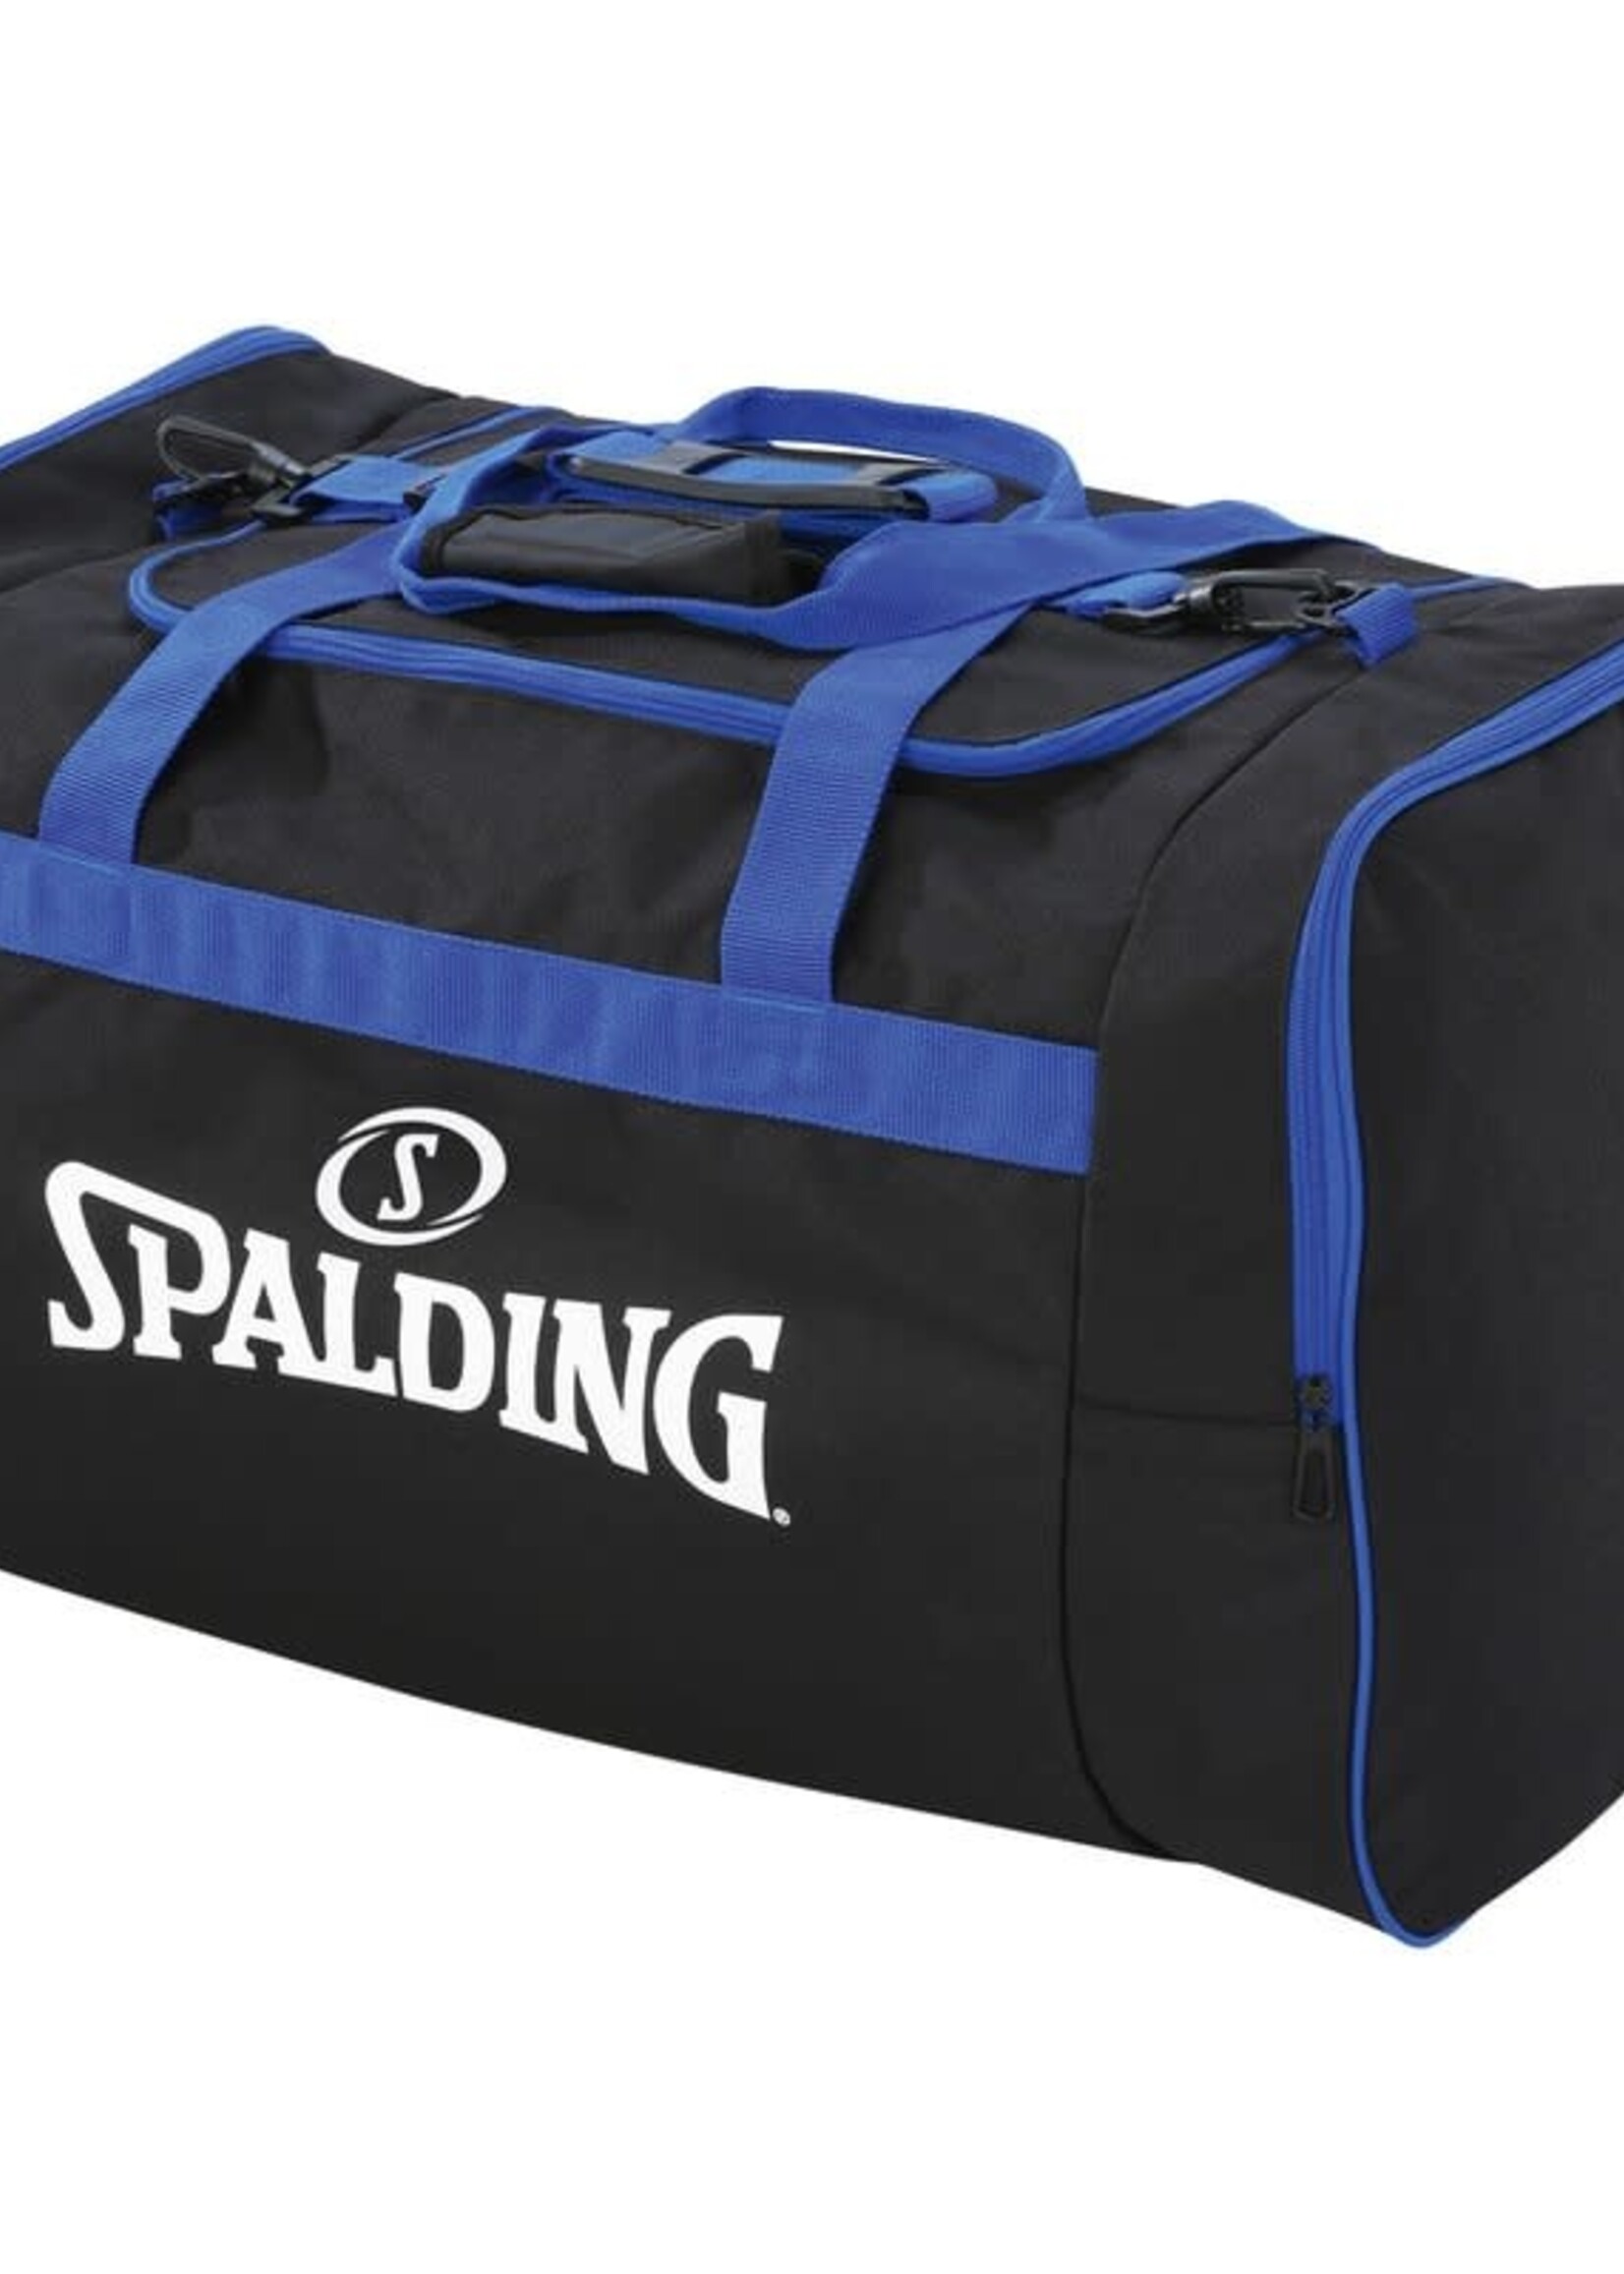 Spalding Team Bag Large 80L Schwarz Blau